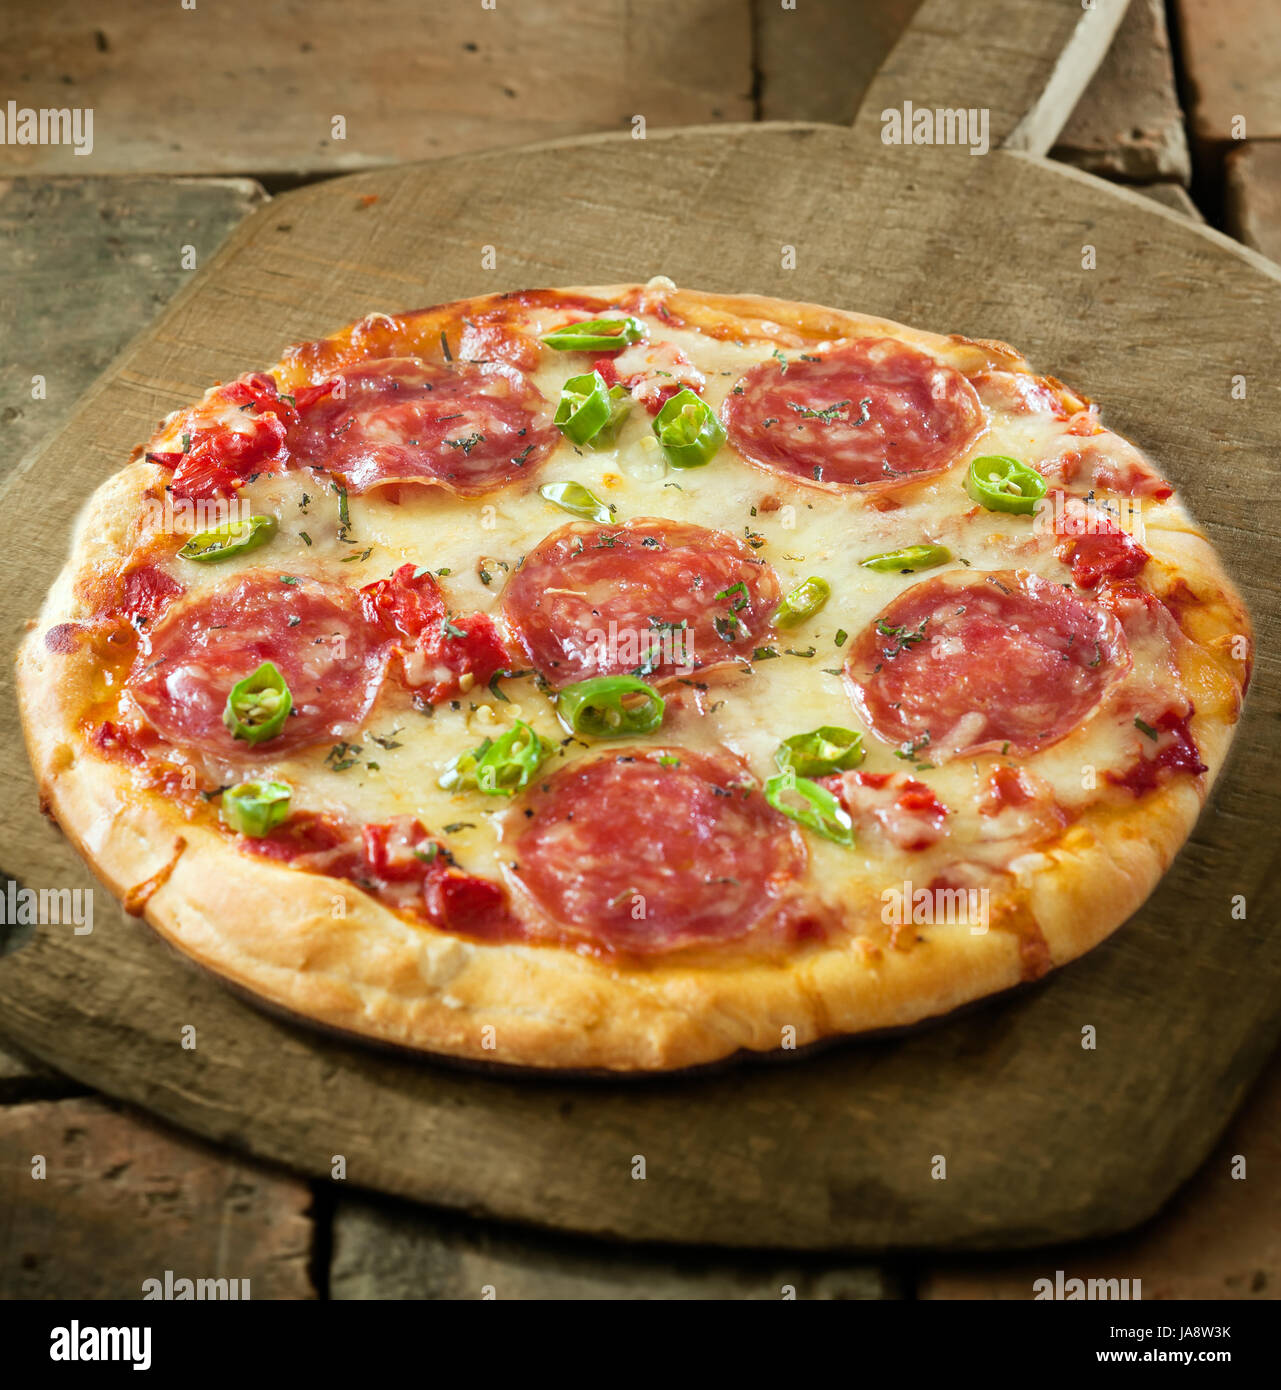 какую колбасу положить в пиццу пепперони фото 1